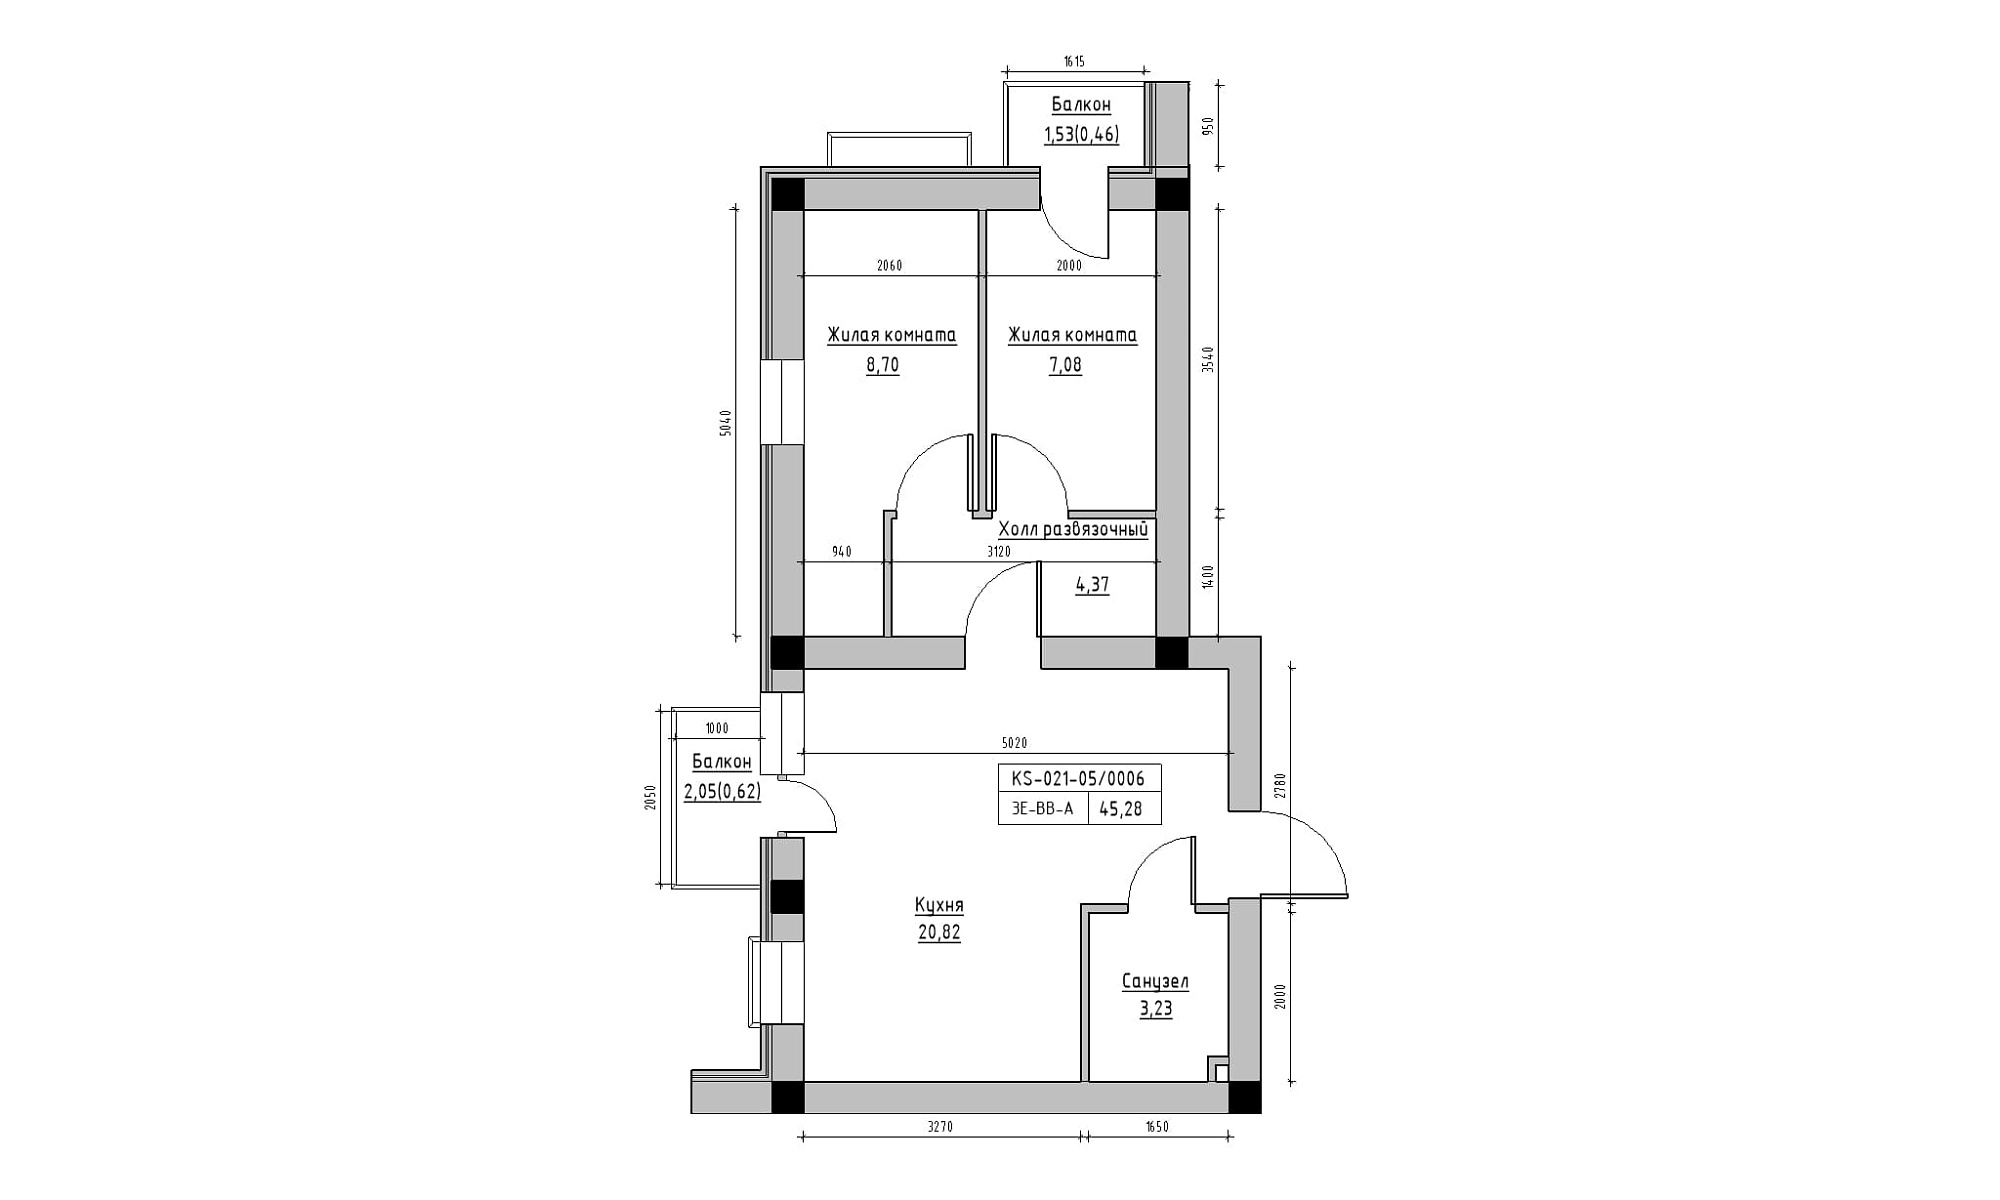 Планування 3-к квартира площею 45.28м2, KS-021-05/0006.